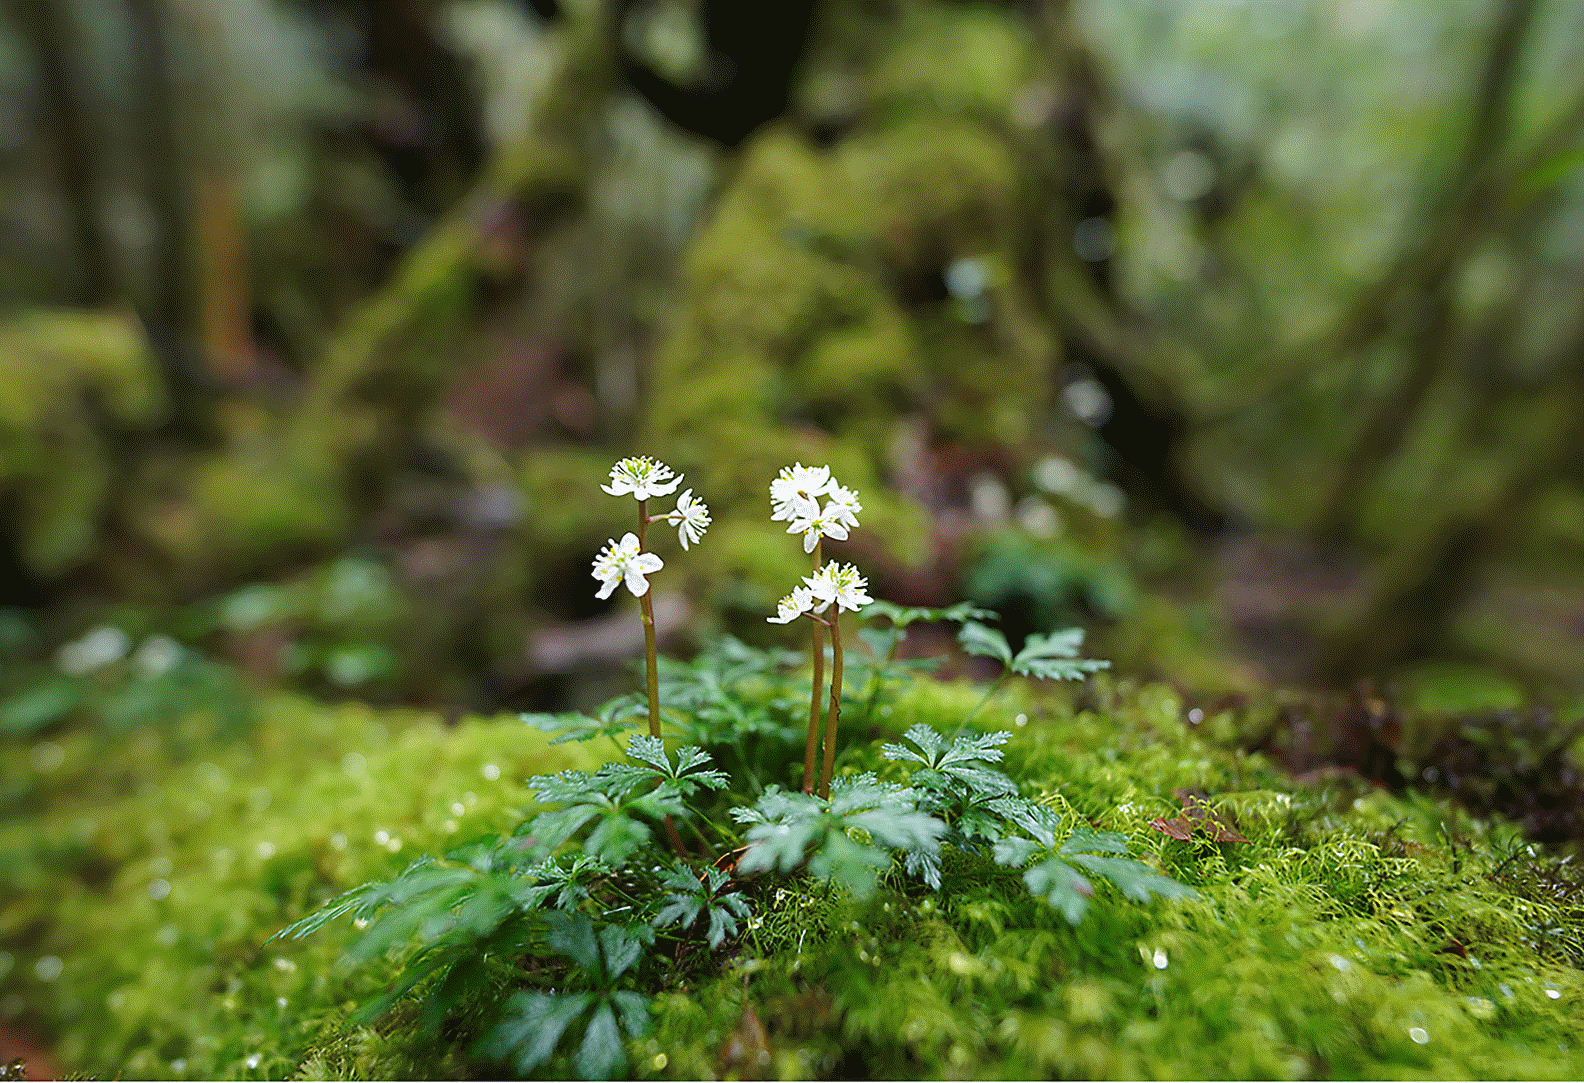 Kép egy erdei sziklán található kis virágról, elmosott elő- és háttérrel